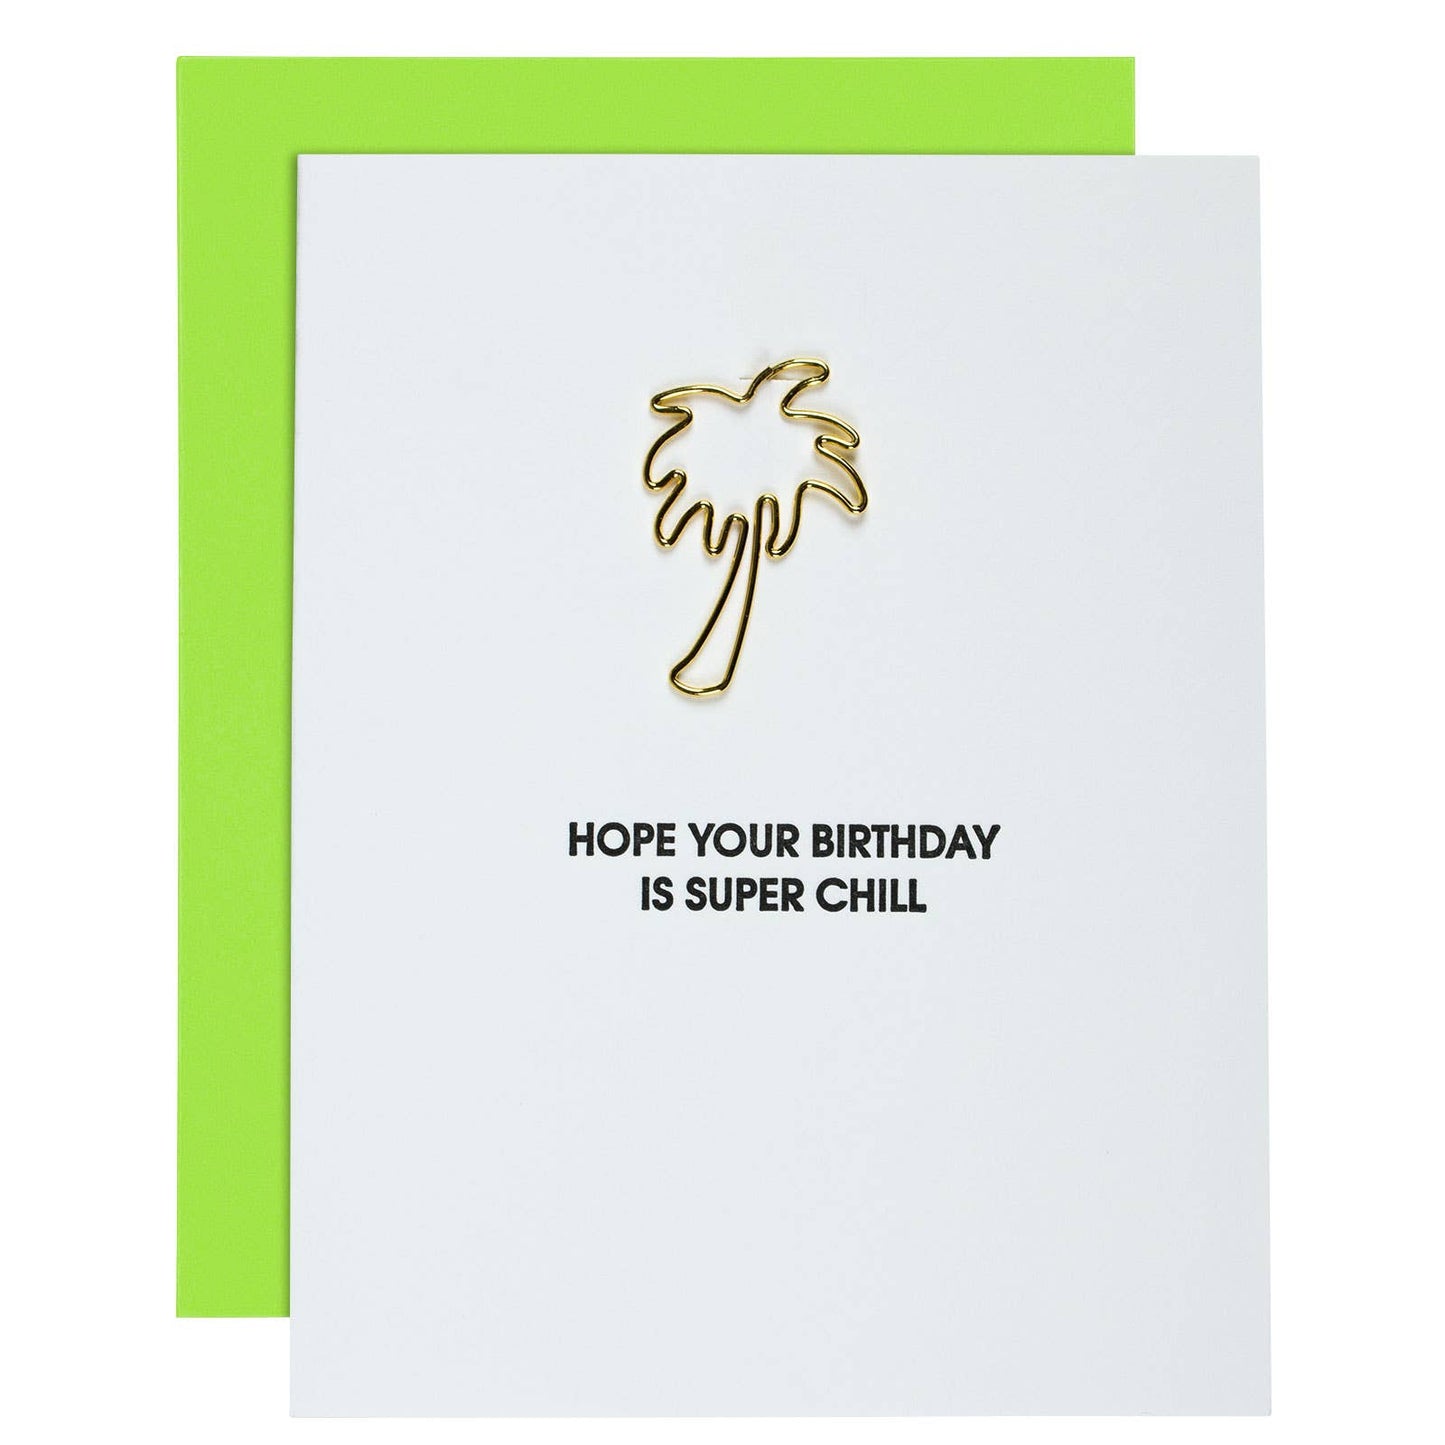 Super Chill Birthday - Palm Tree Paper Clip Letterpress Card